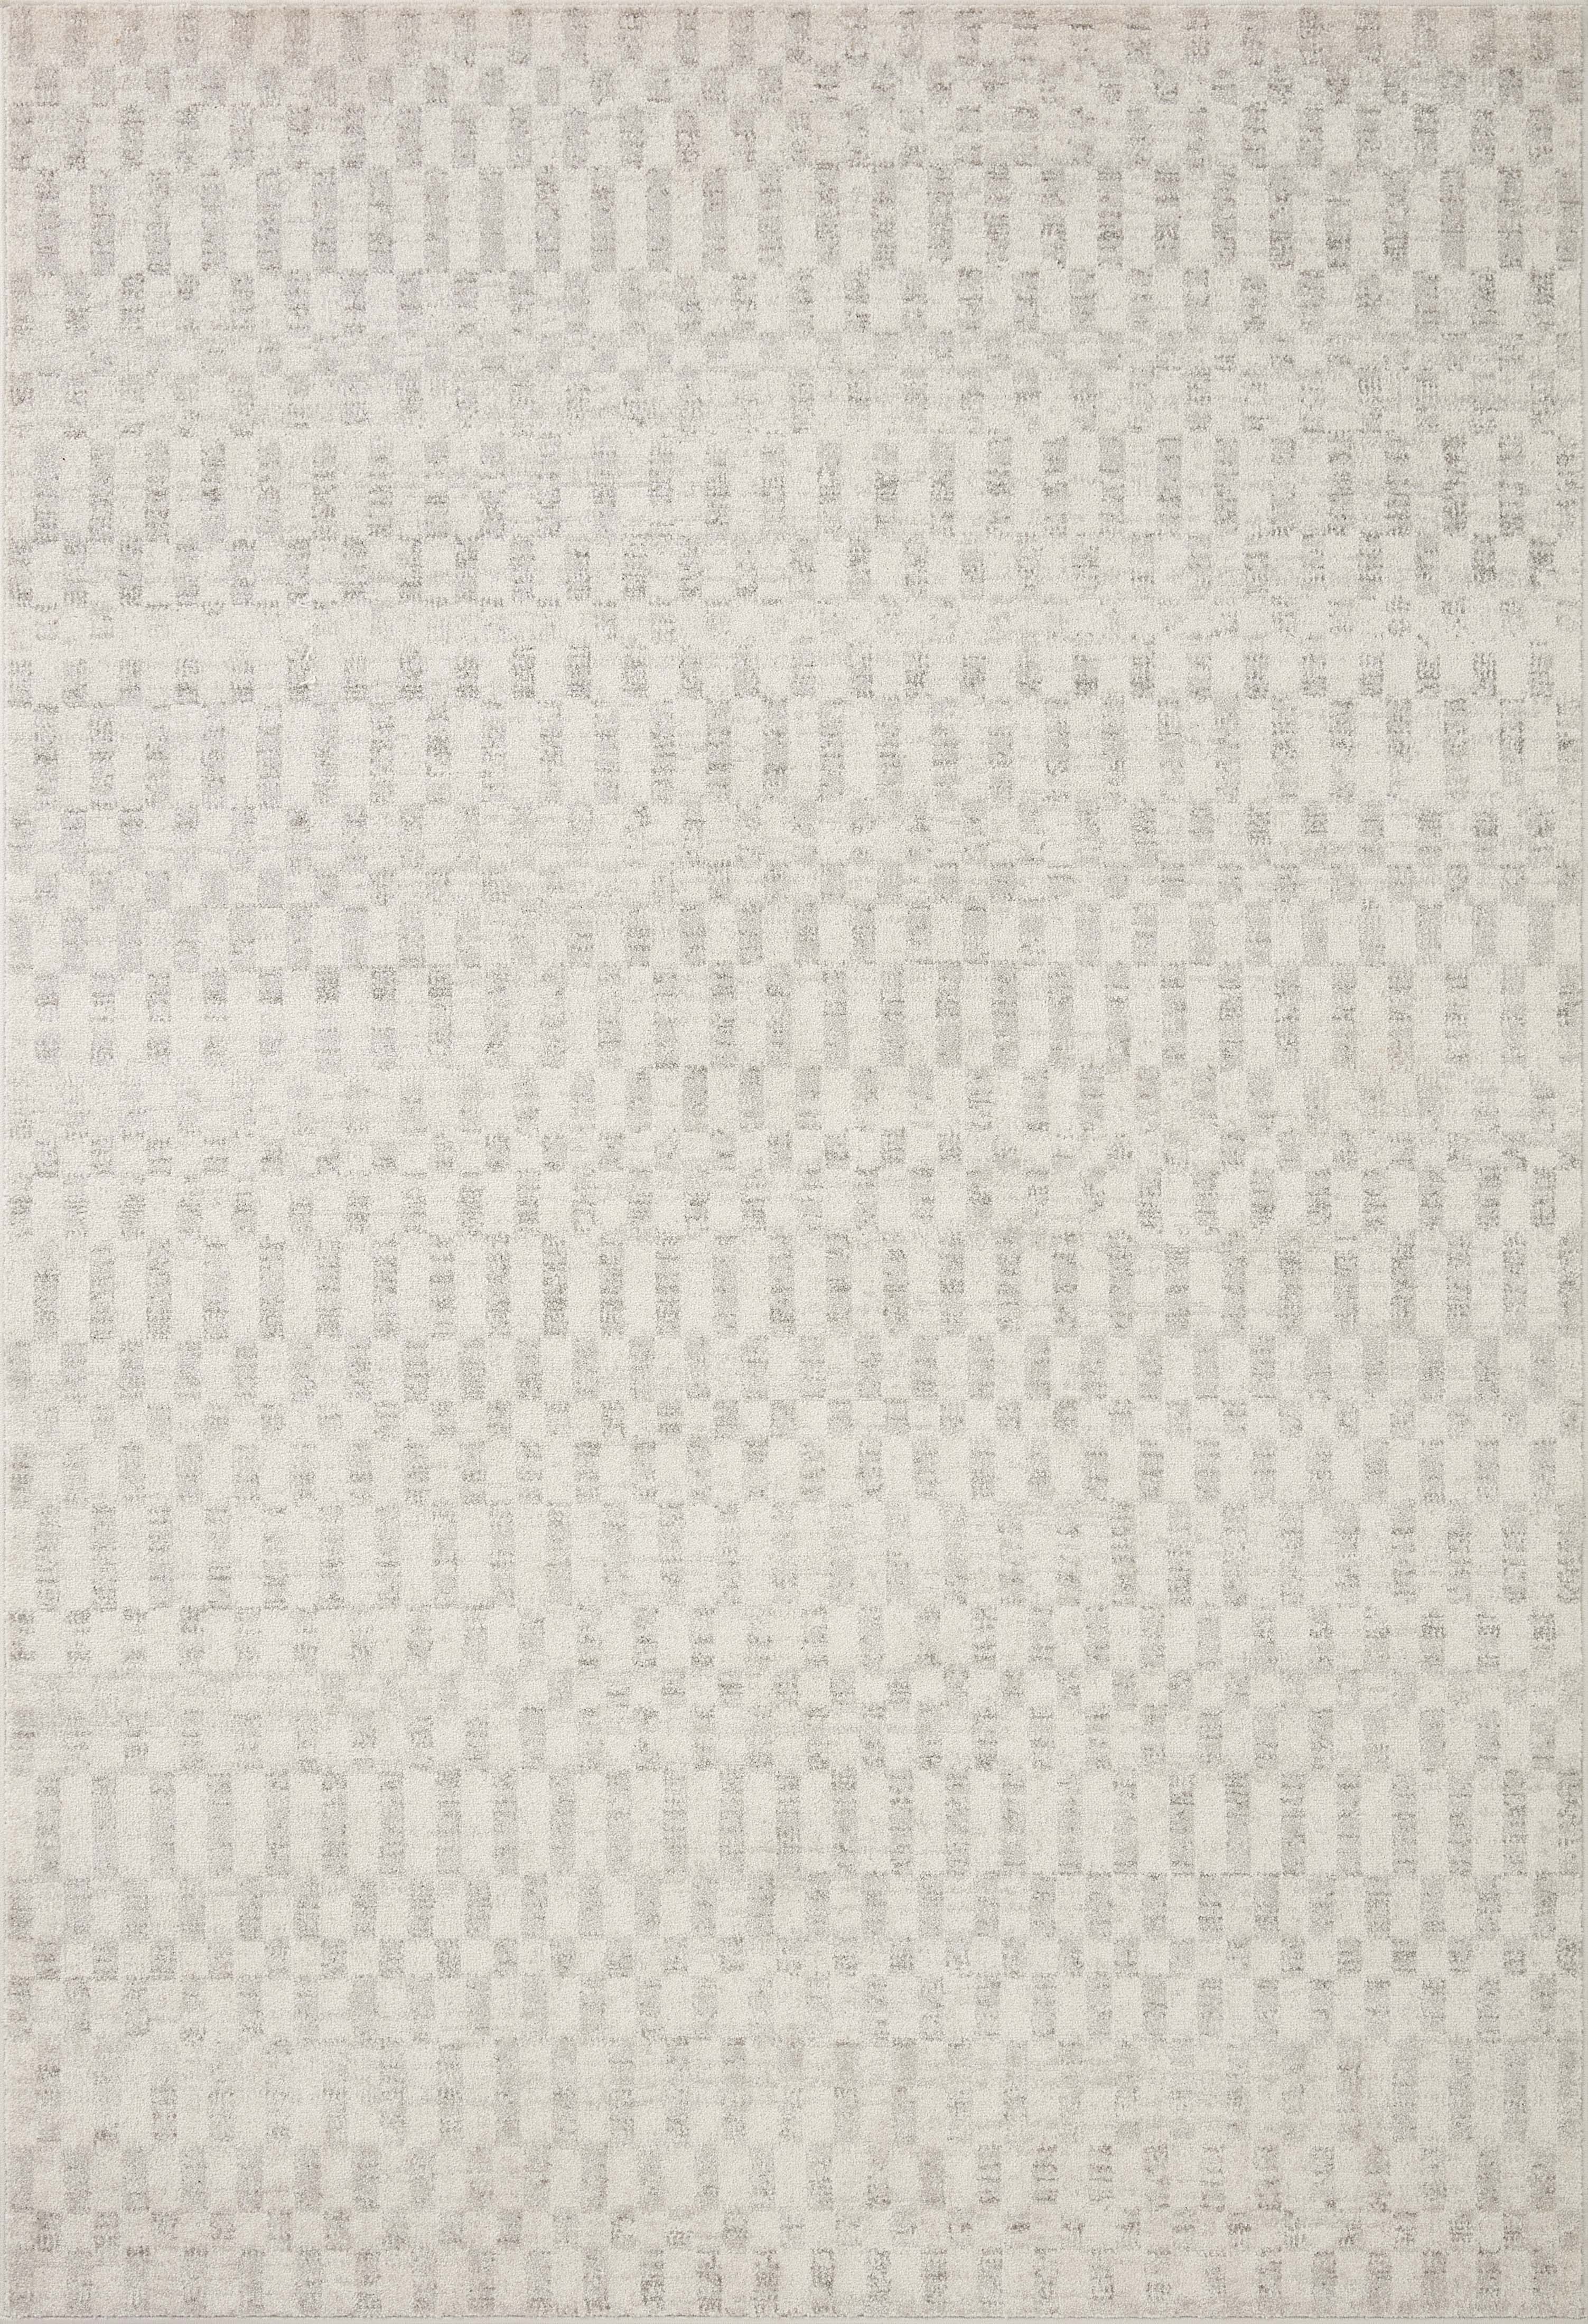 KAM-05 Ivory / Grey 18" x 18" Sample - Image 0